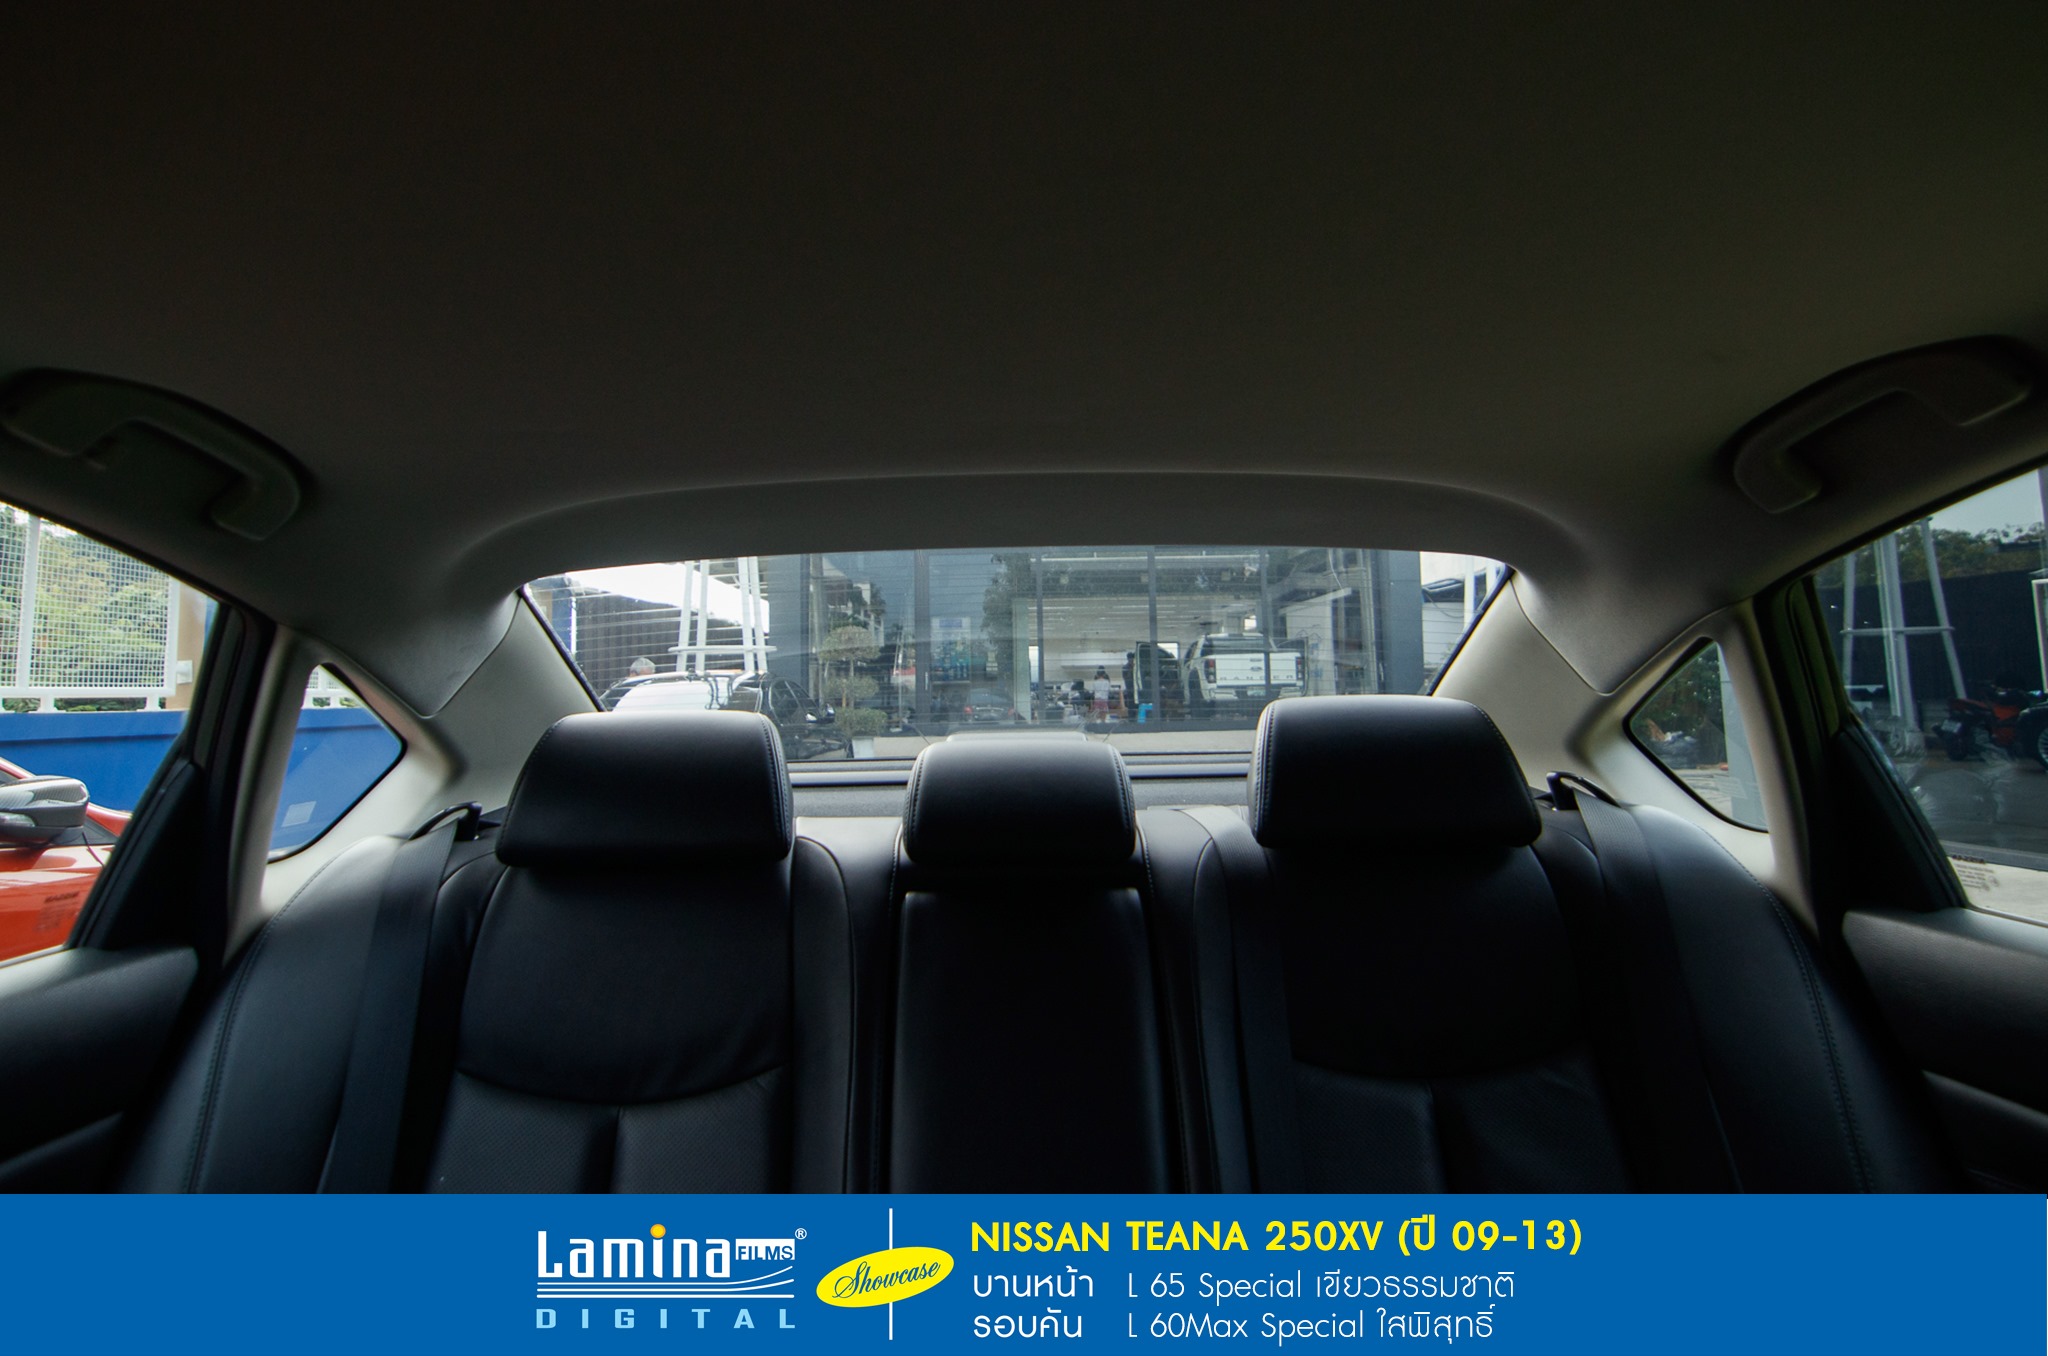 ฟิล์มใสกันร้อน lamina special series Nissan Teana 250xv 6